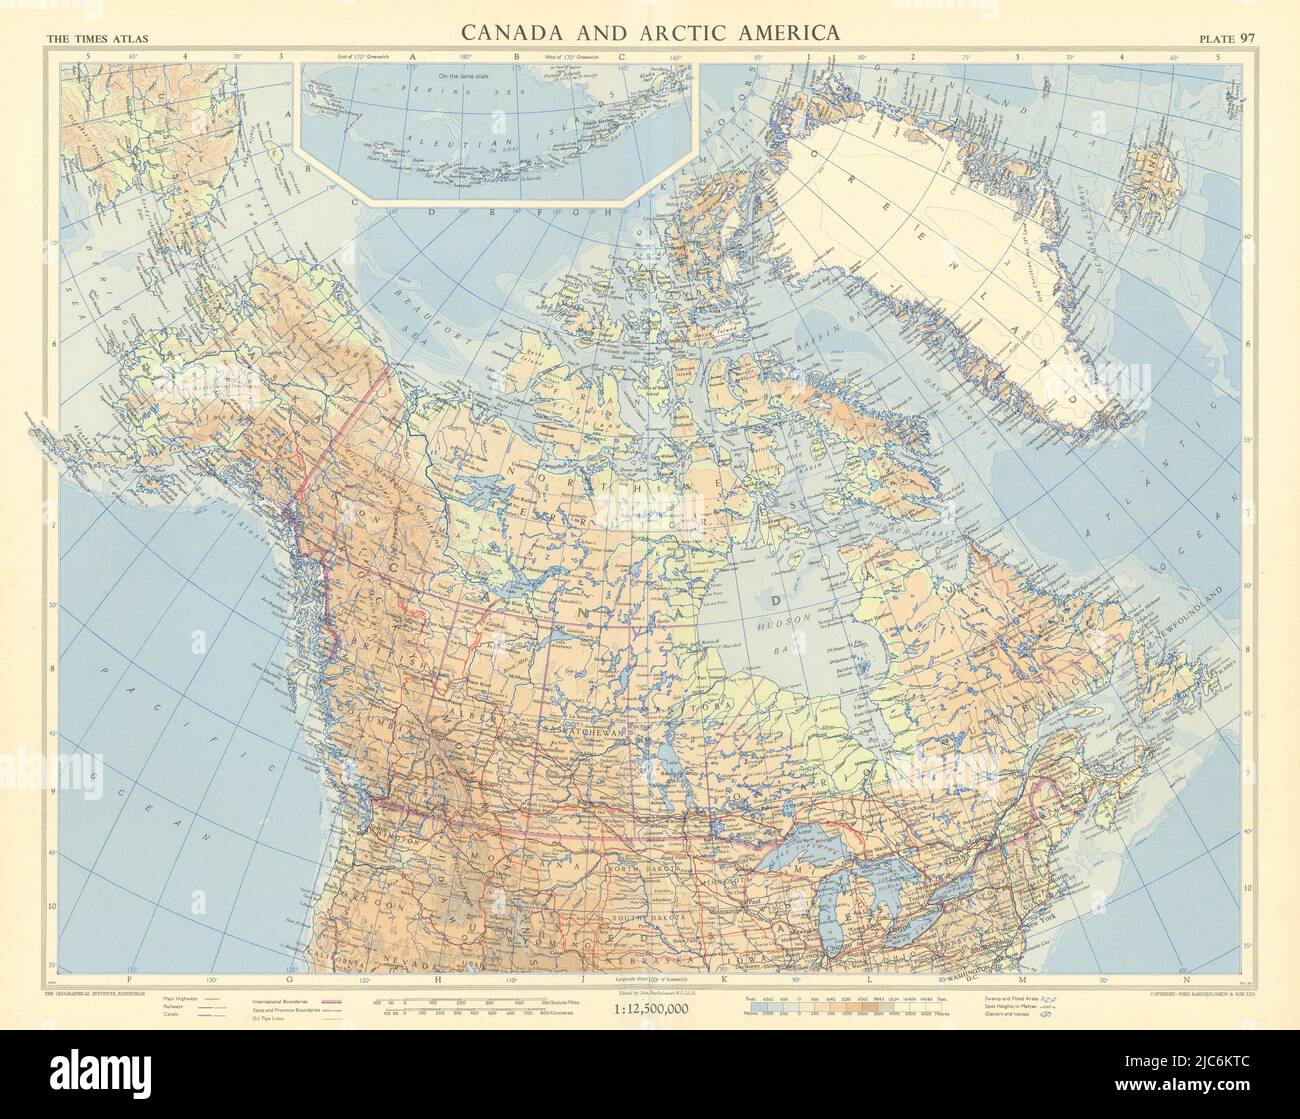 Canada e America artica. Alaska della Groenlandia. TIMES 1957 vecchio grafico della mappa d'epoca Foto Stock